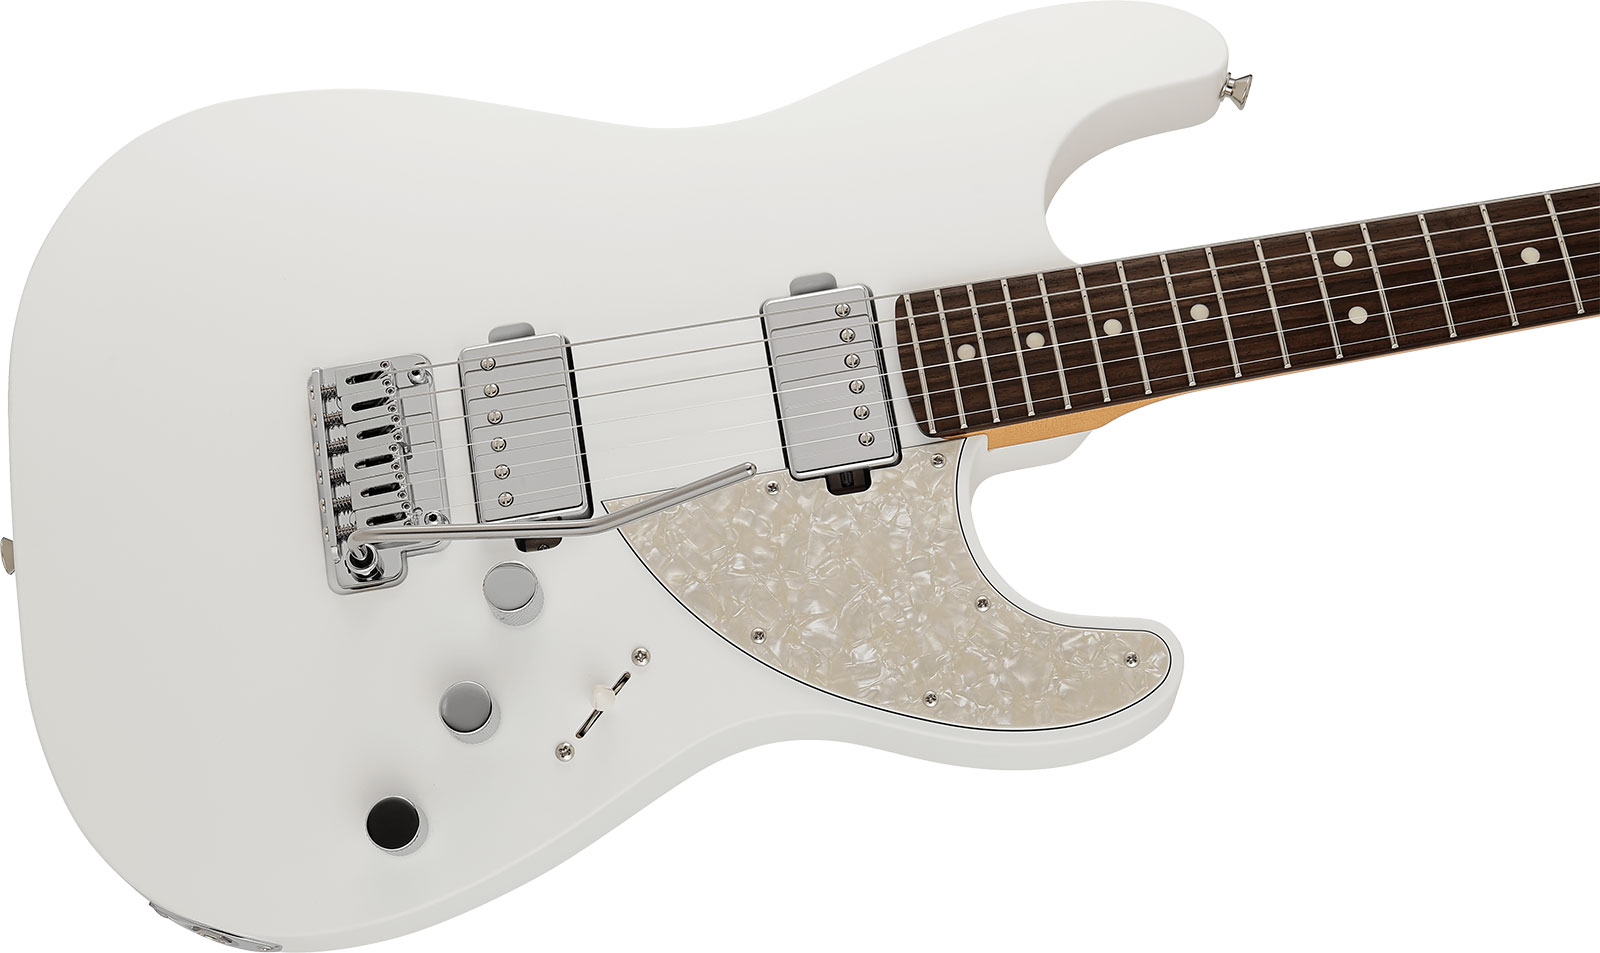 Fender Strat Elemental Mij Jap 2h Trem Rw - Nimbus White - Elektrische gitaar in Str-vorm - Variation 2